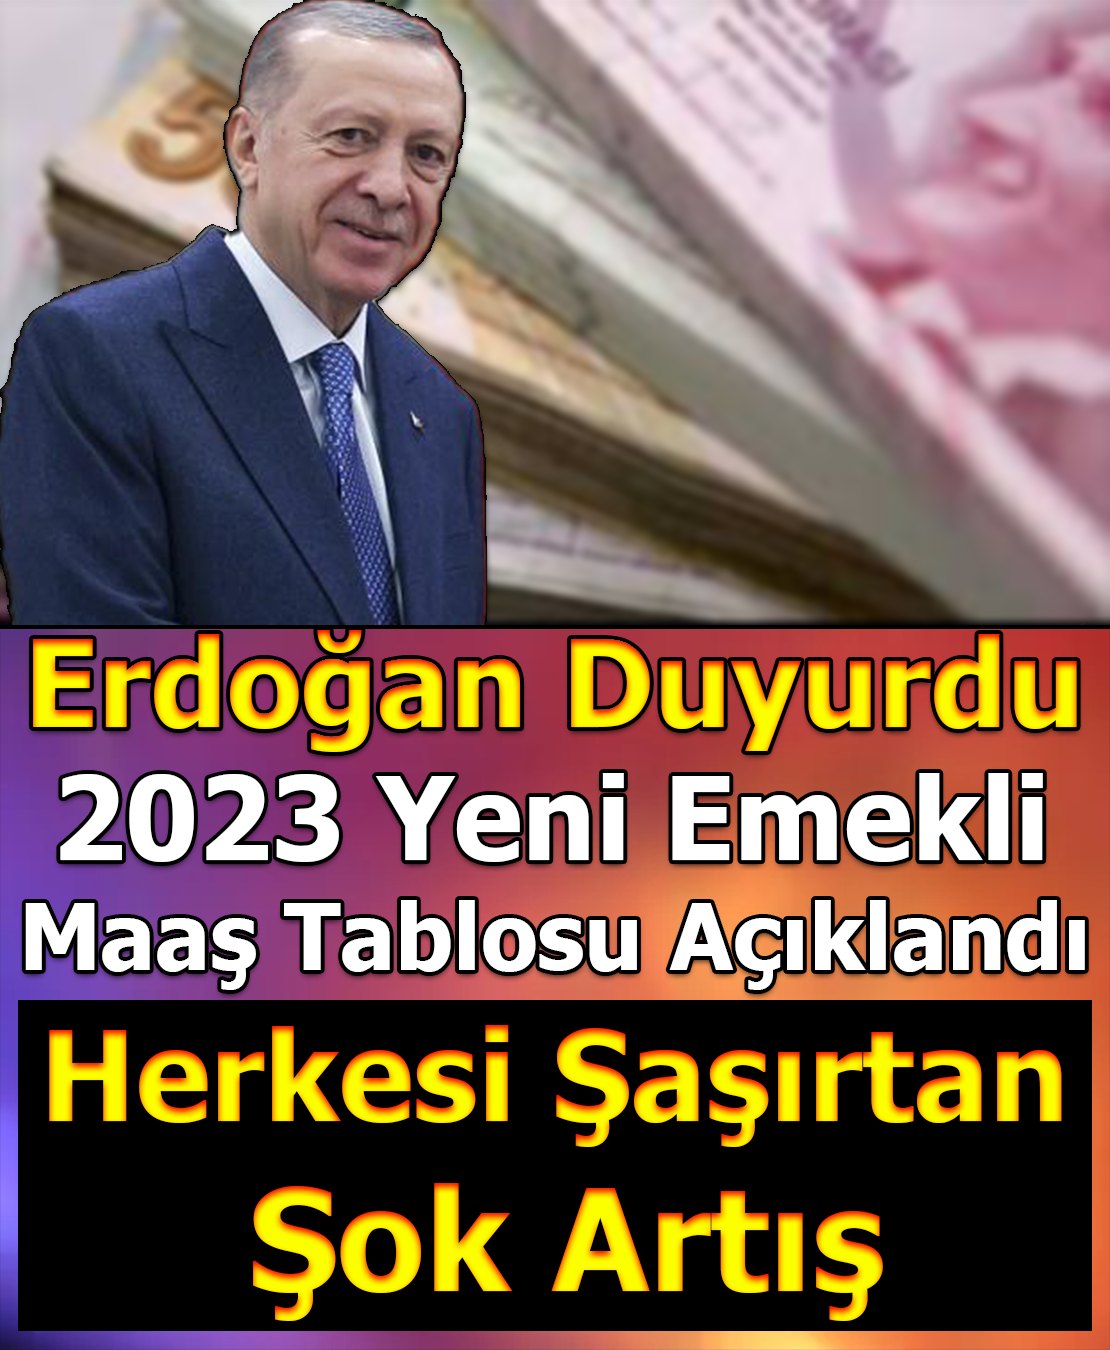 Erdoğan duyurdu.. Yeni maaslar belli oldu